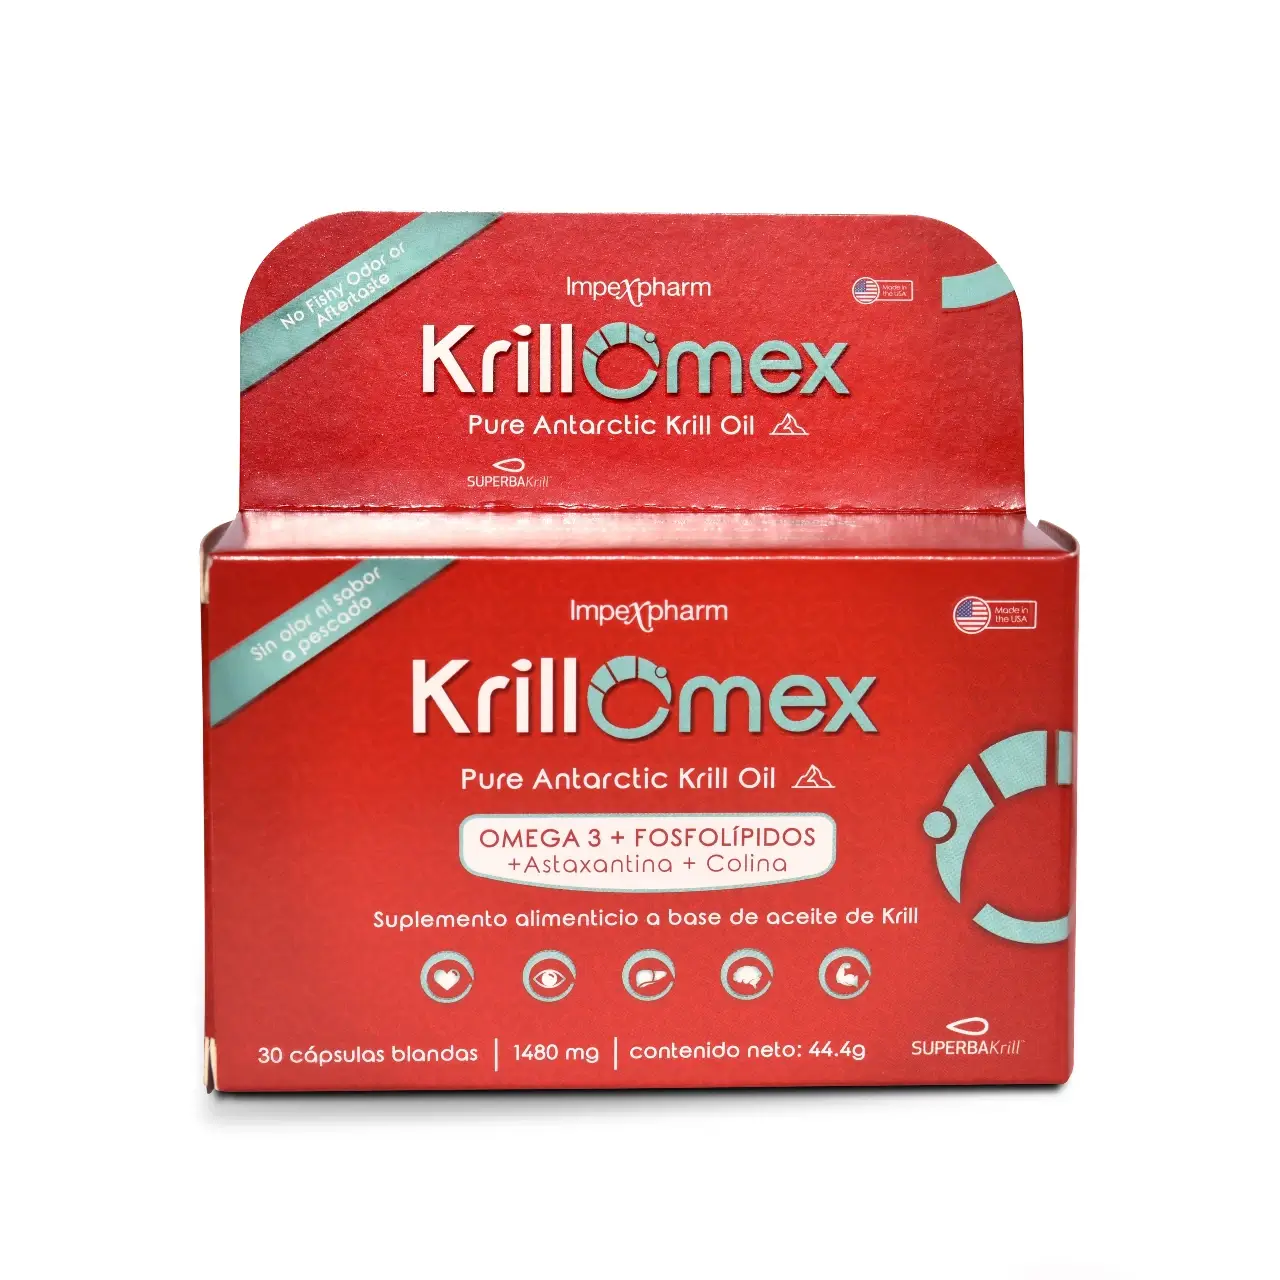 KrillOmex